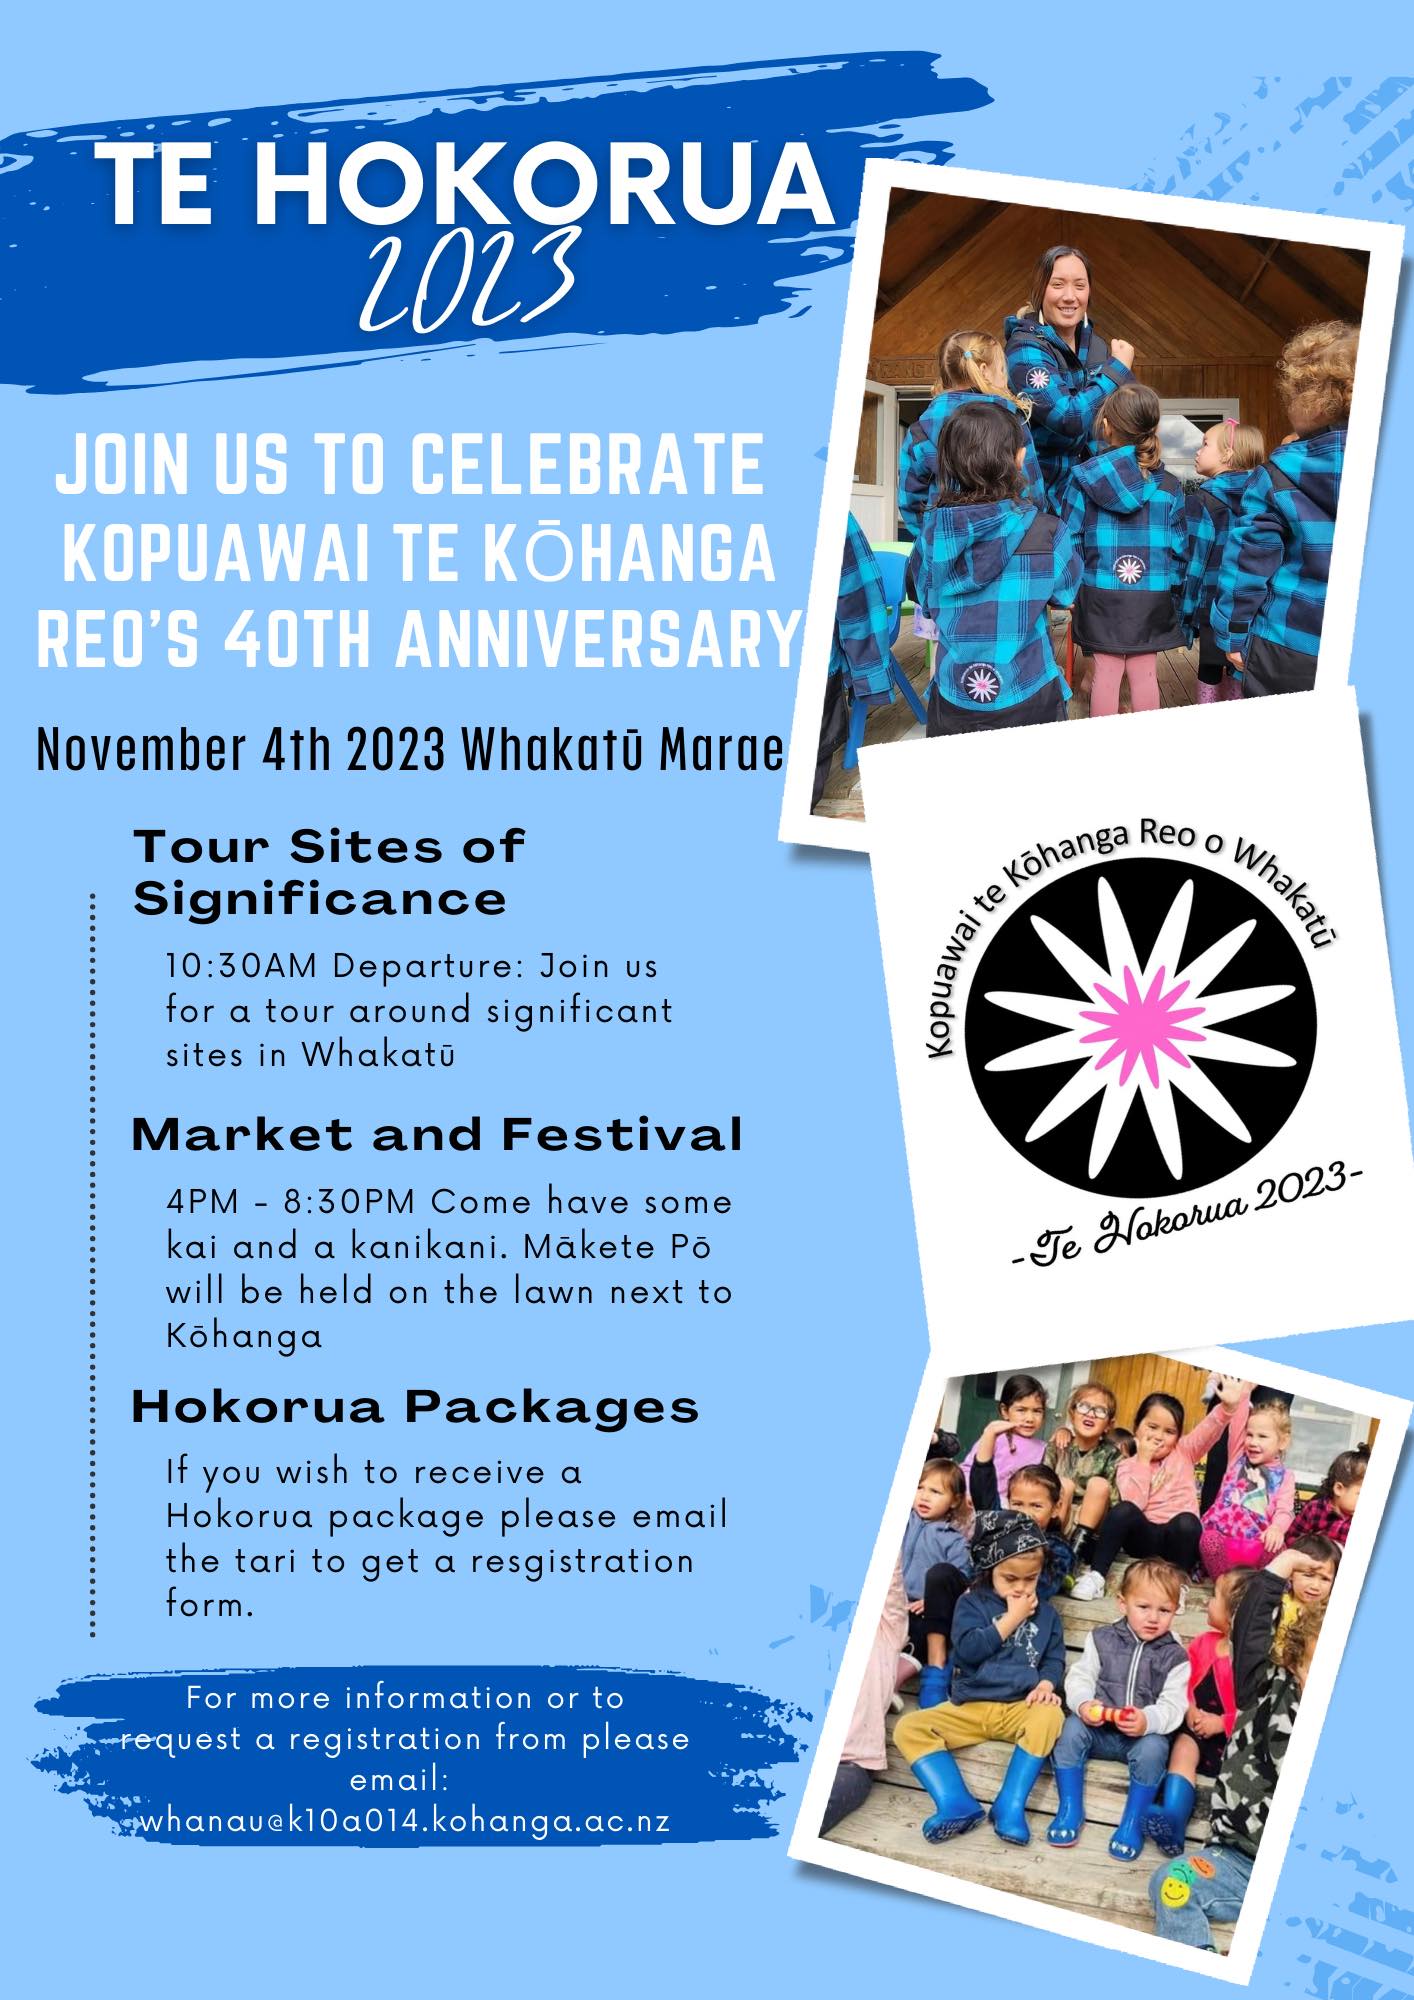 Kopuawai Te Kōhanga Reo o Whakatū turns 40!